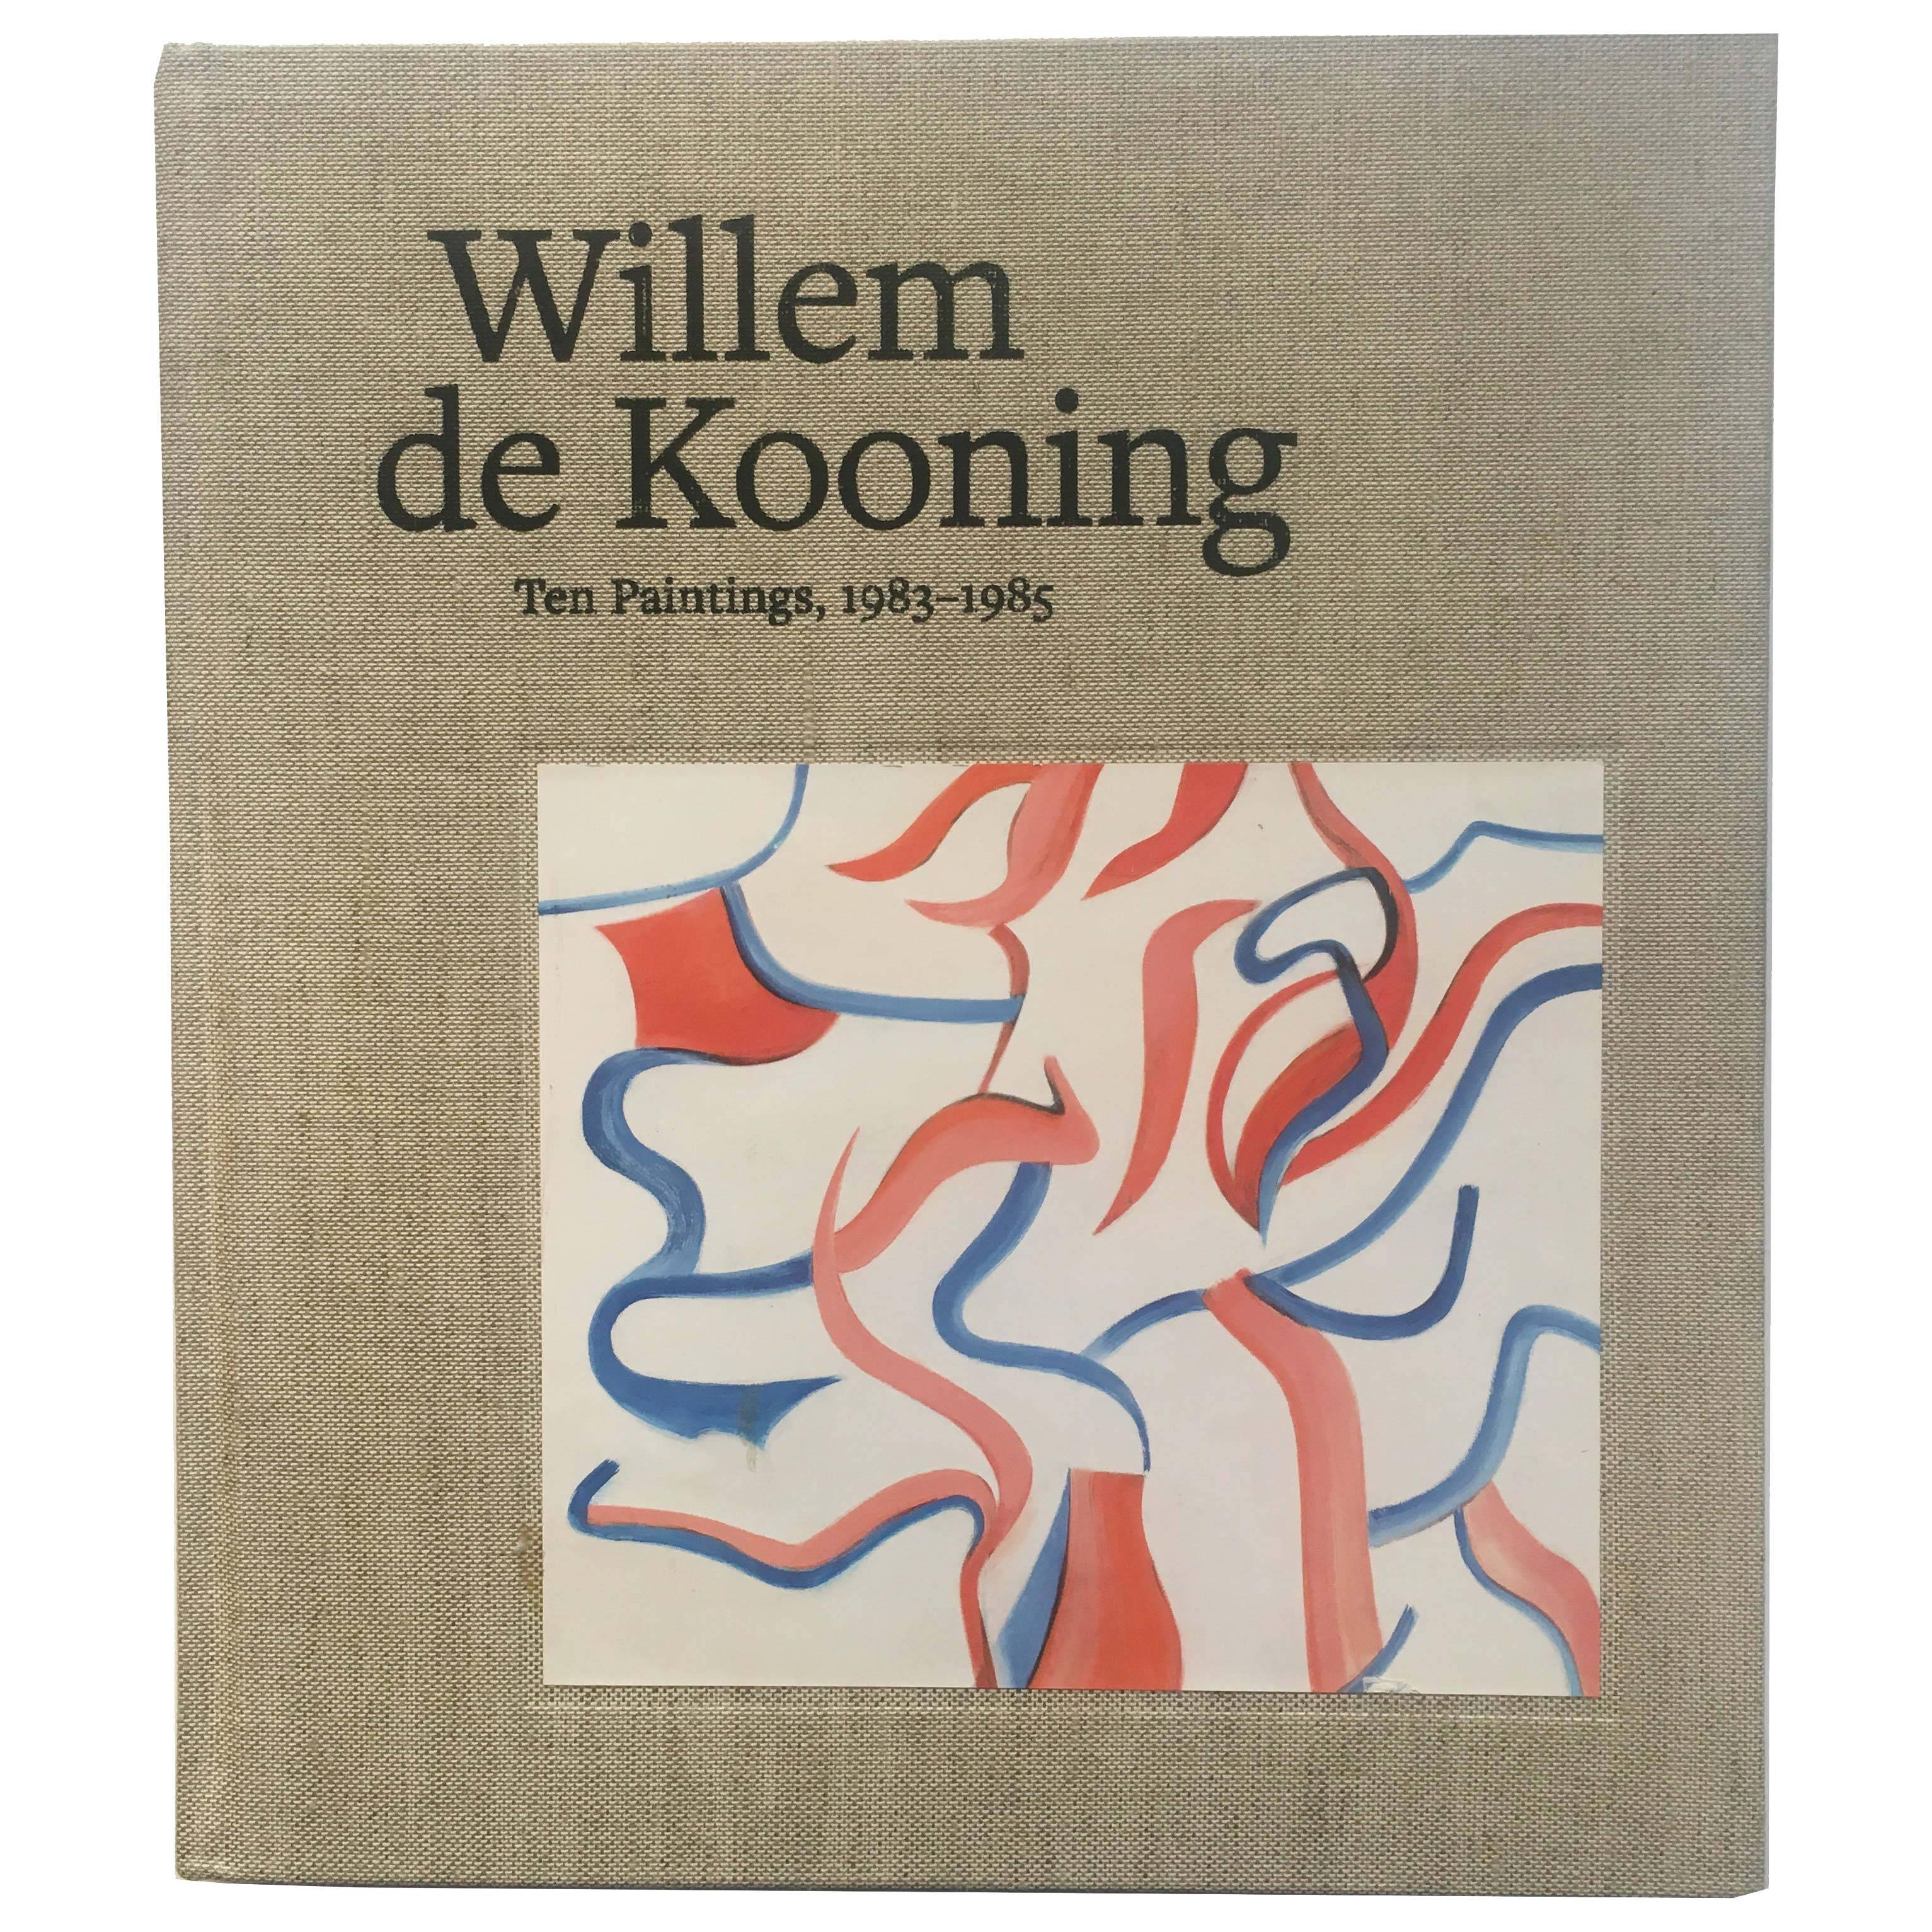 Willem de Kooning, Ten Paintings, 1983-1985